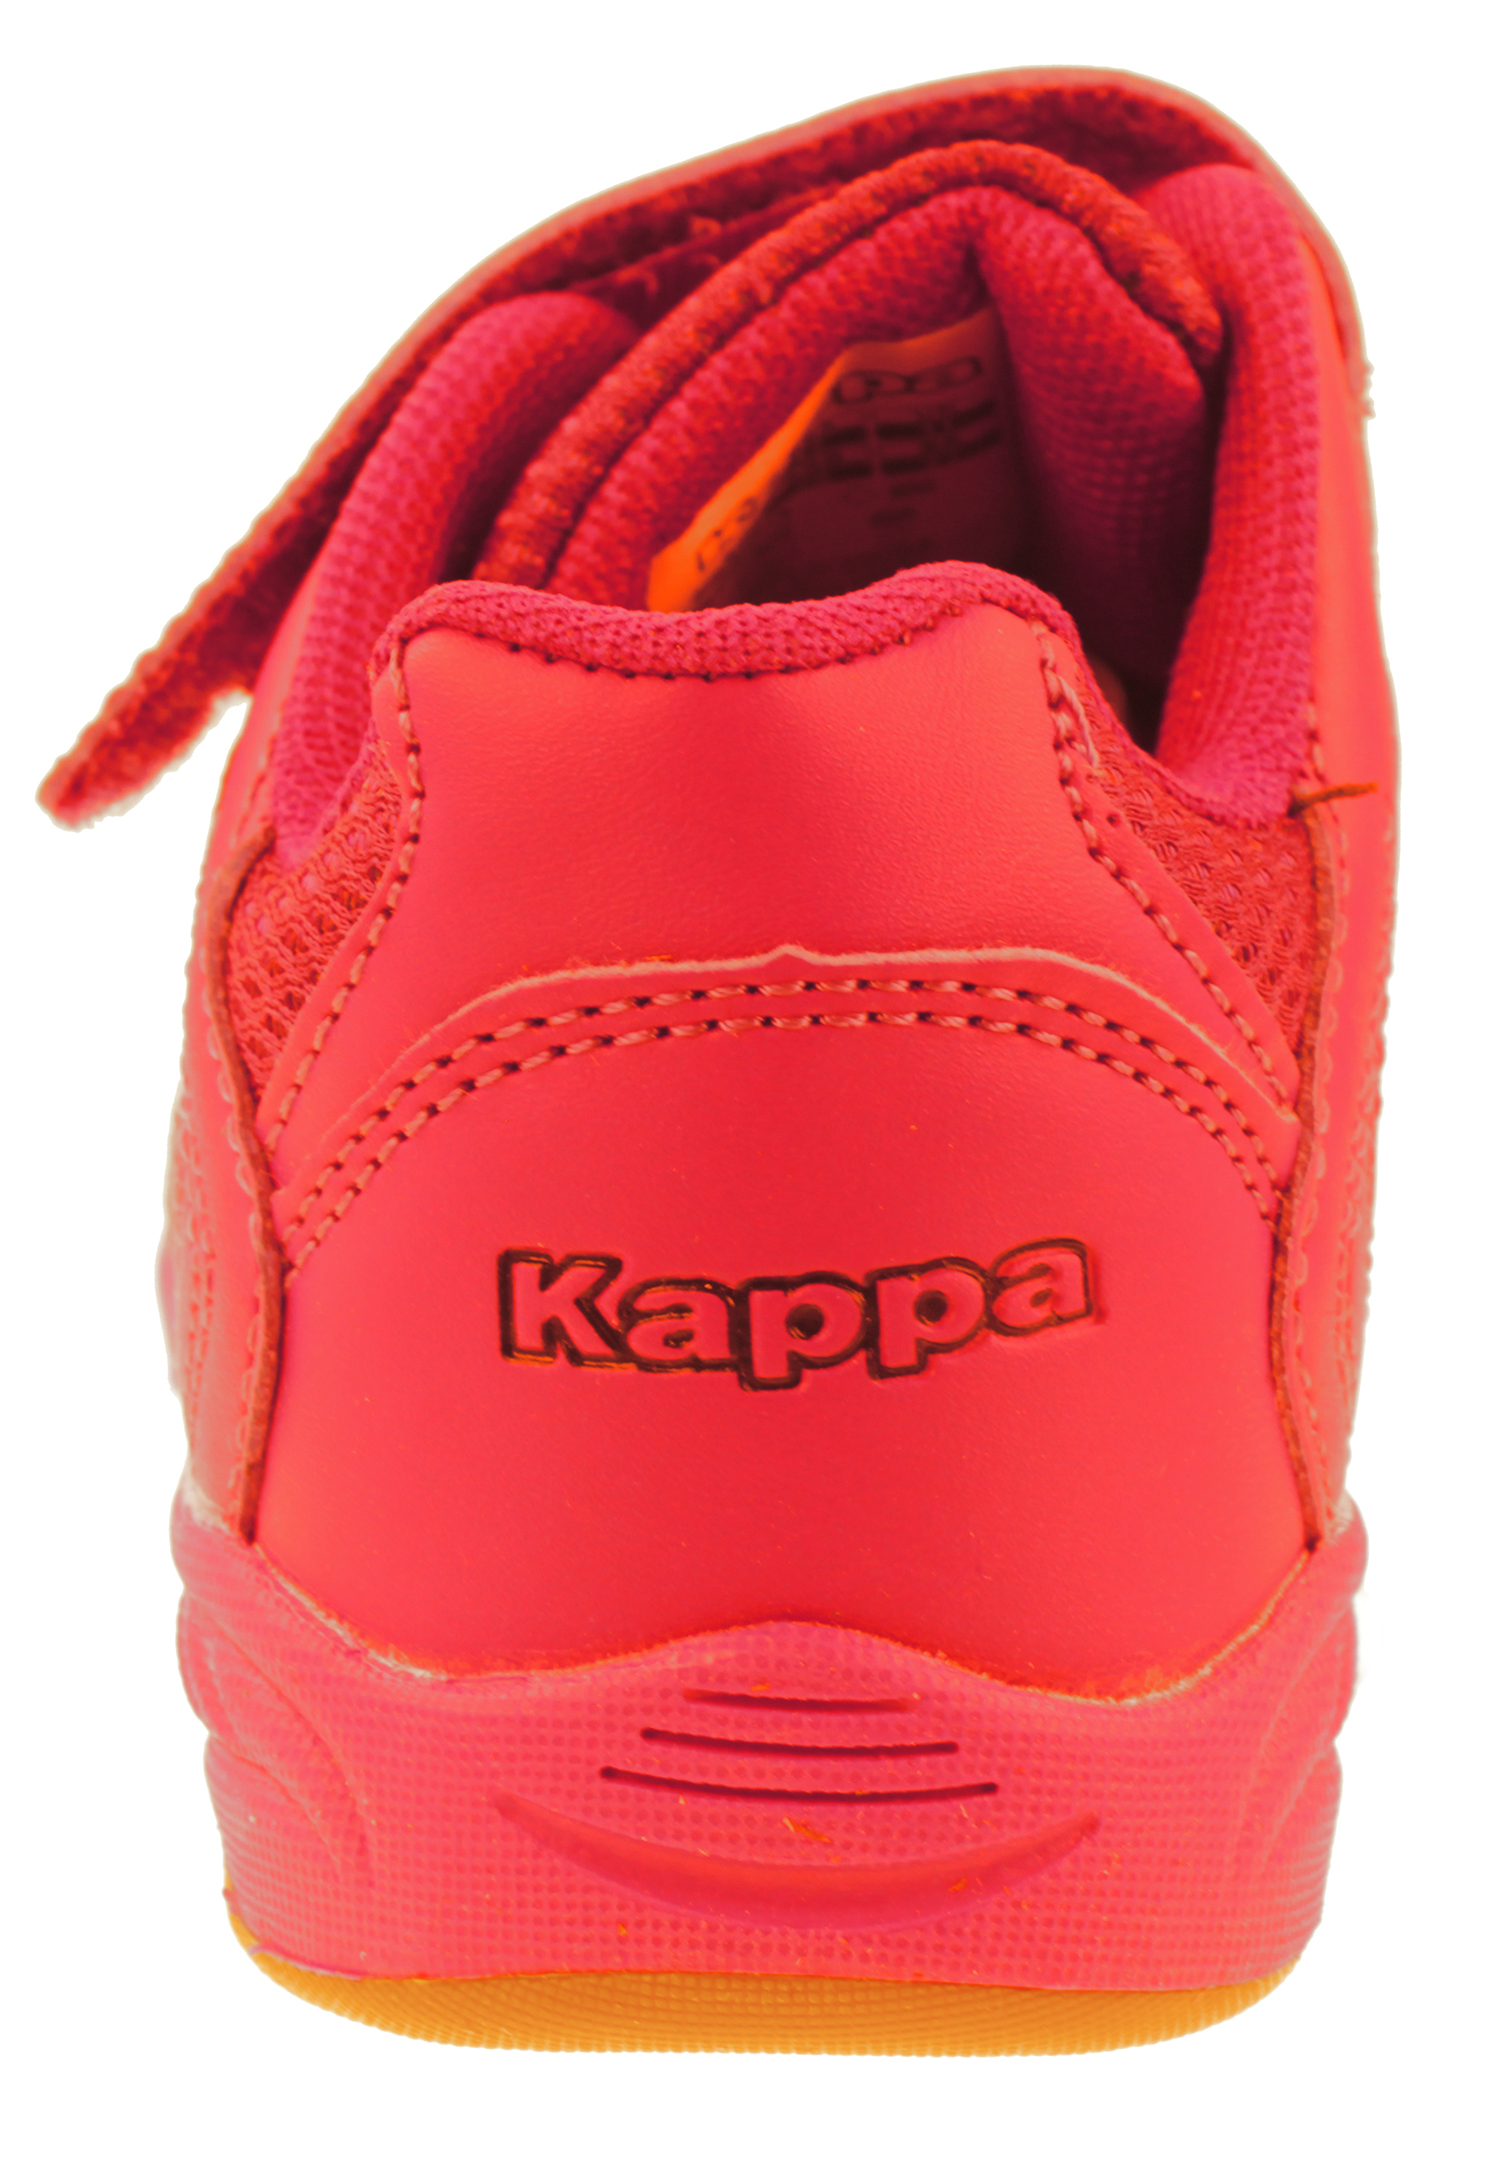 Kappa Kinder Sneaker Turnschuh 260765OCK 2011 rot